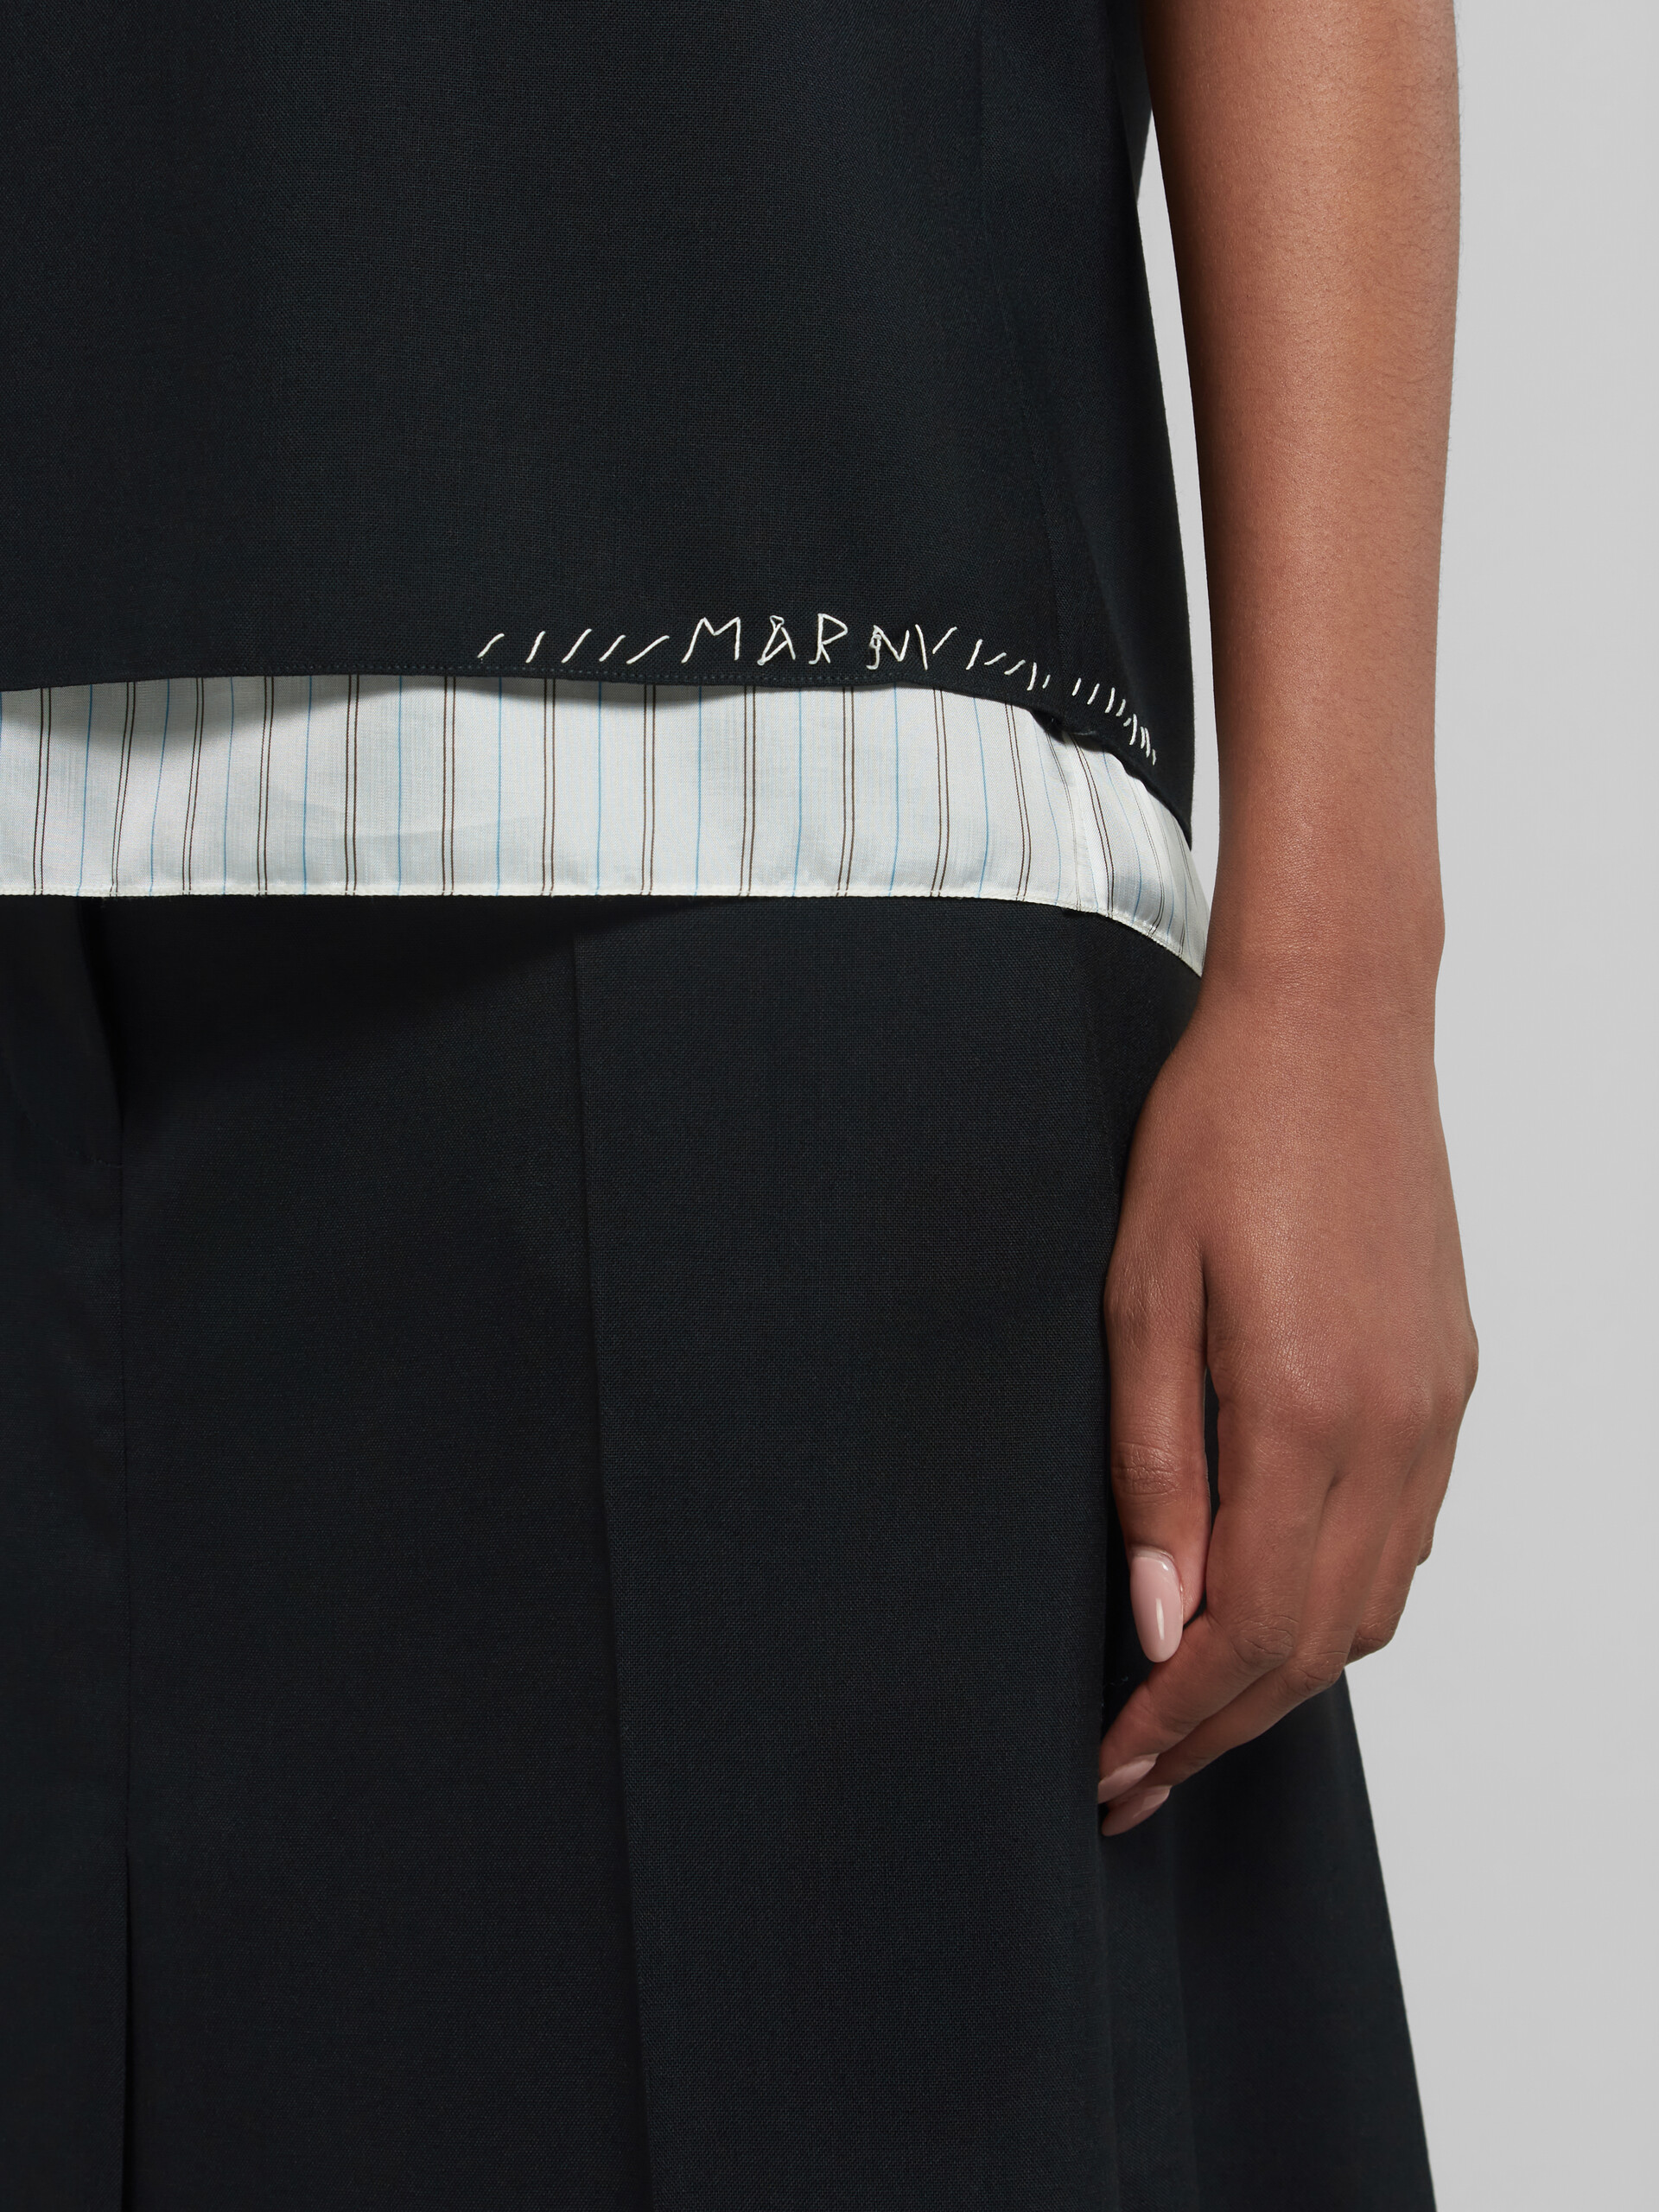 Haut sans manches en laine tropicale noire avec effet raccommodé Marni - Chemises - Image 4